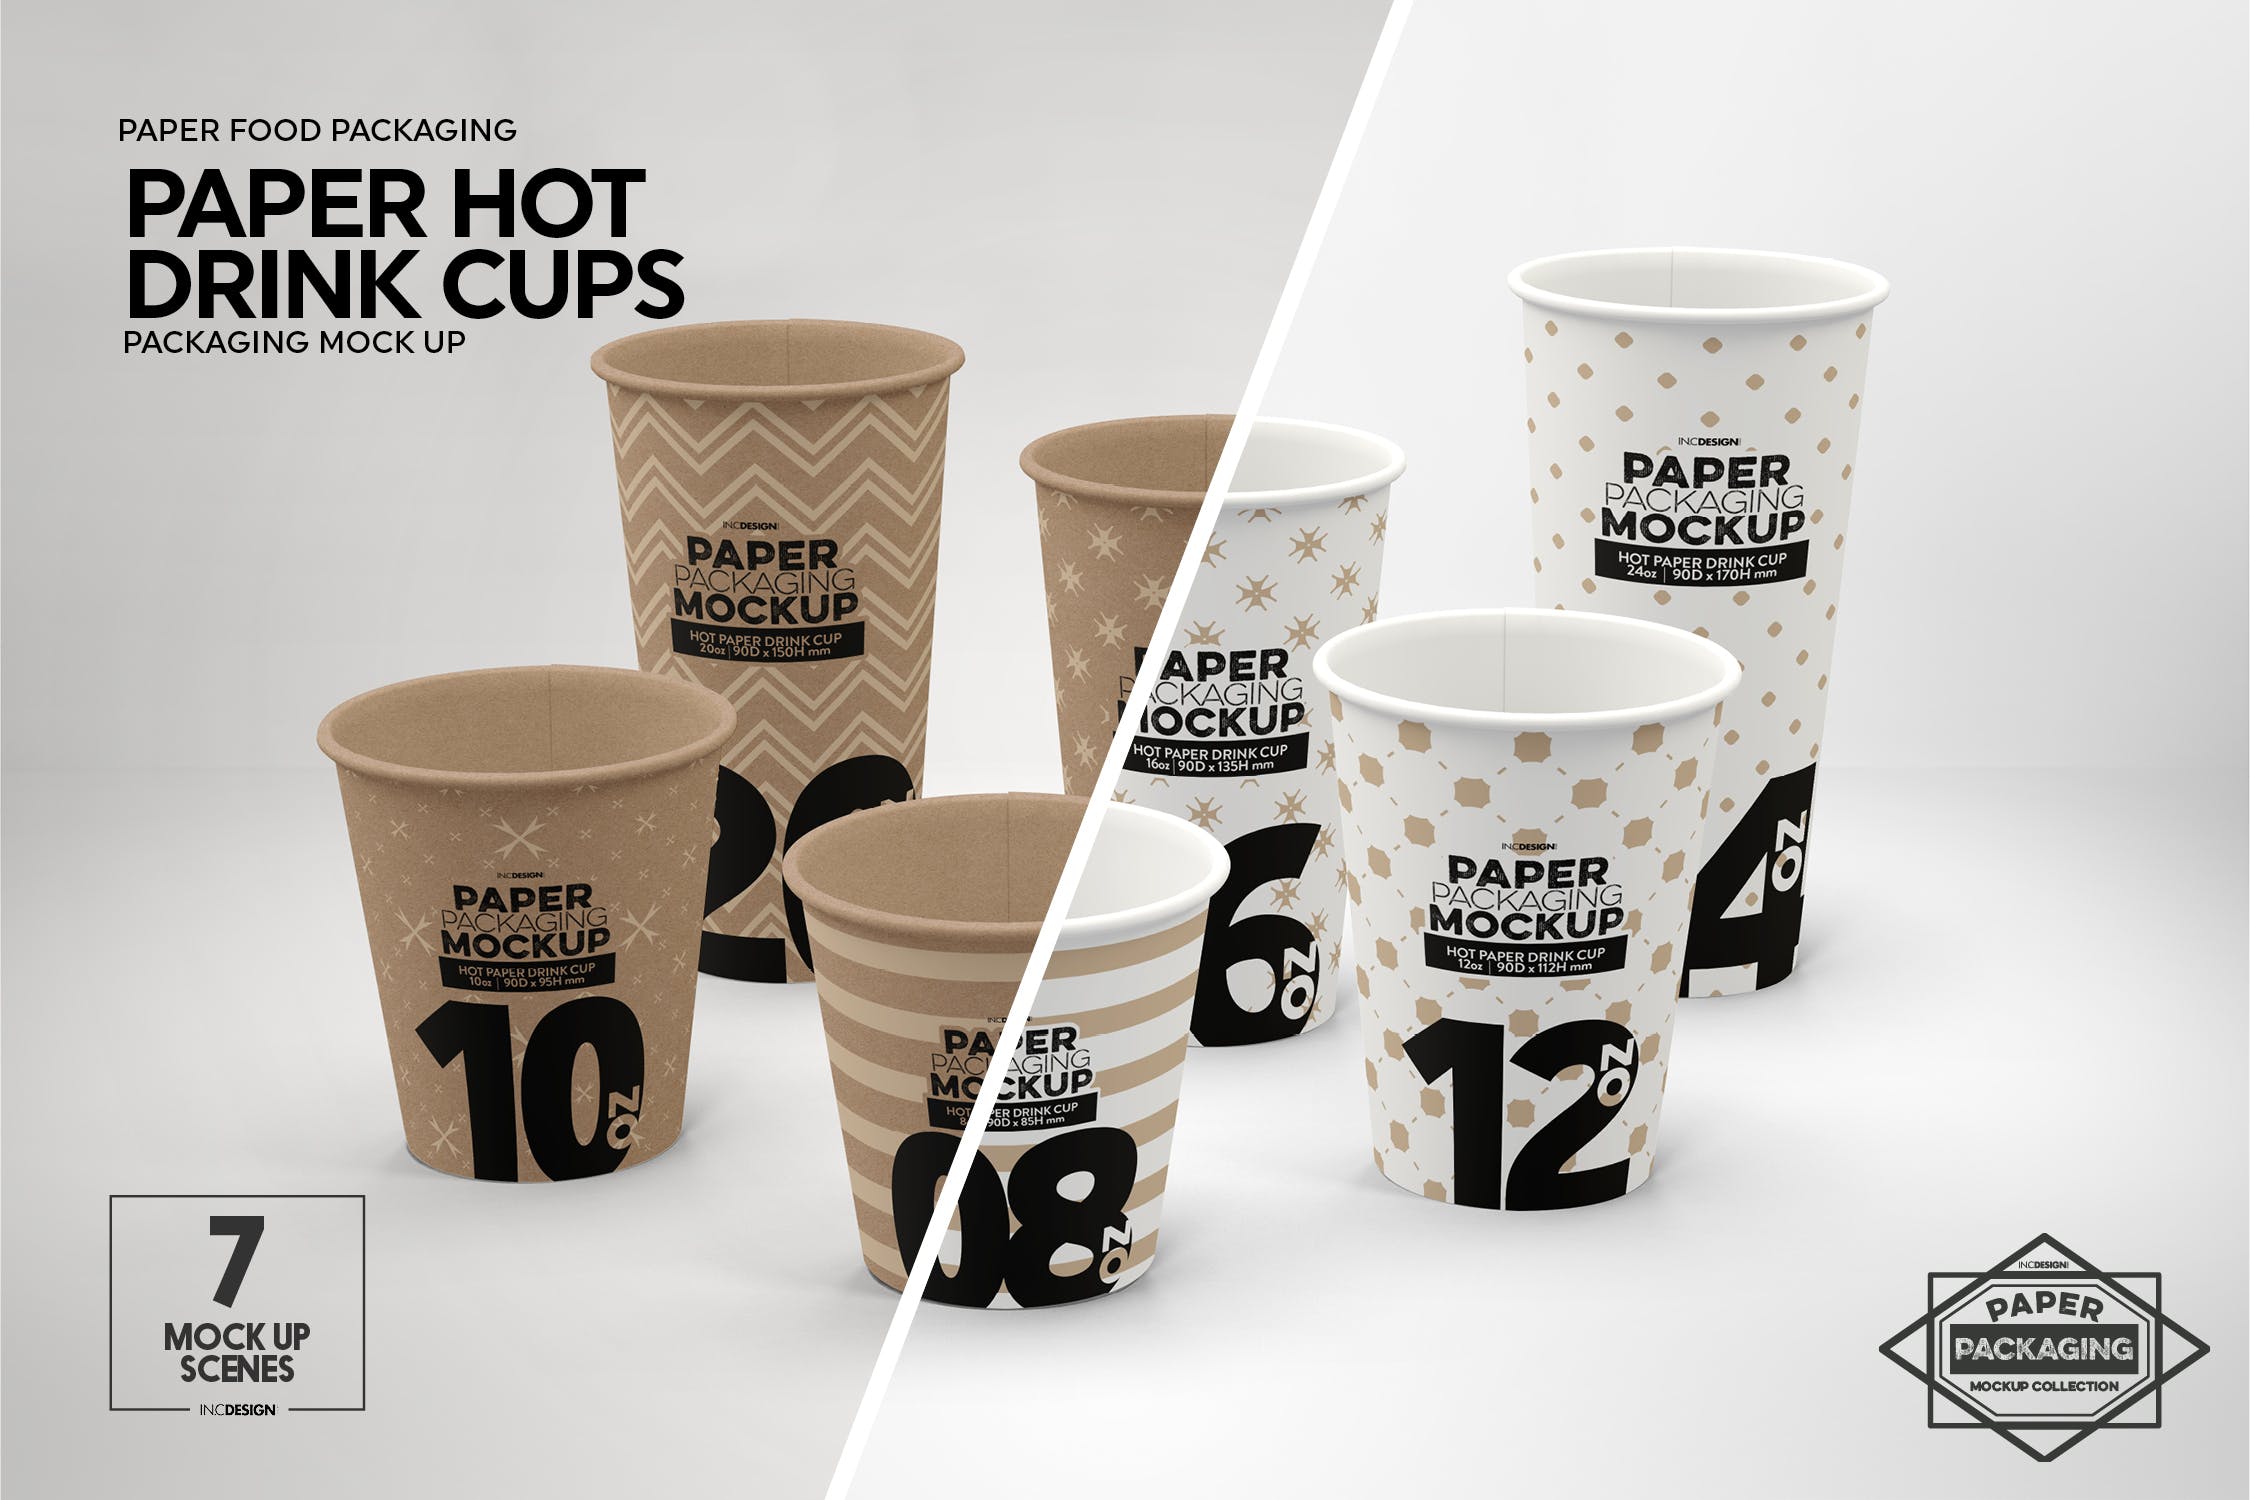 热饮一次性纸杯外观设计素材库精选 Paper Hot Drink Cups Packaging Mockup插图(2)